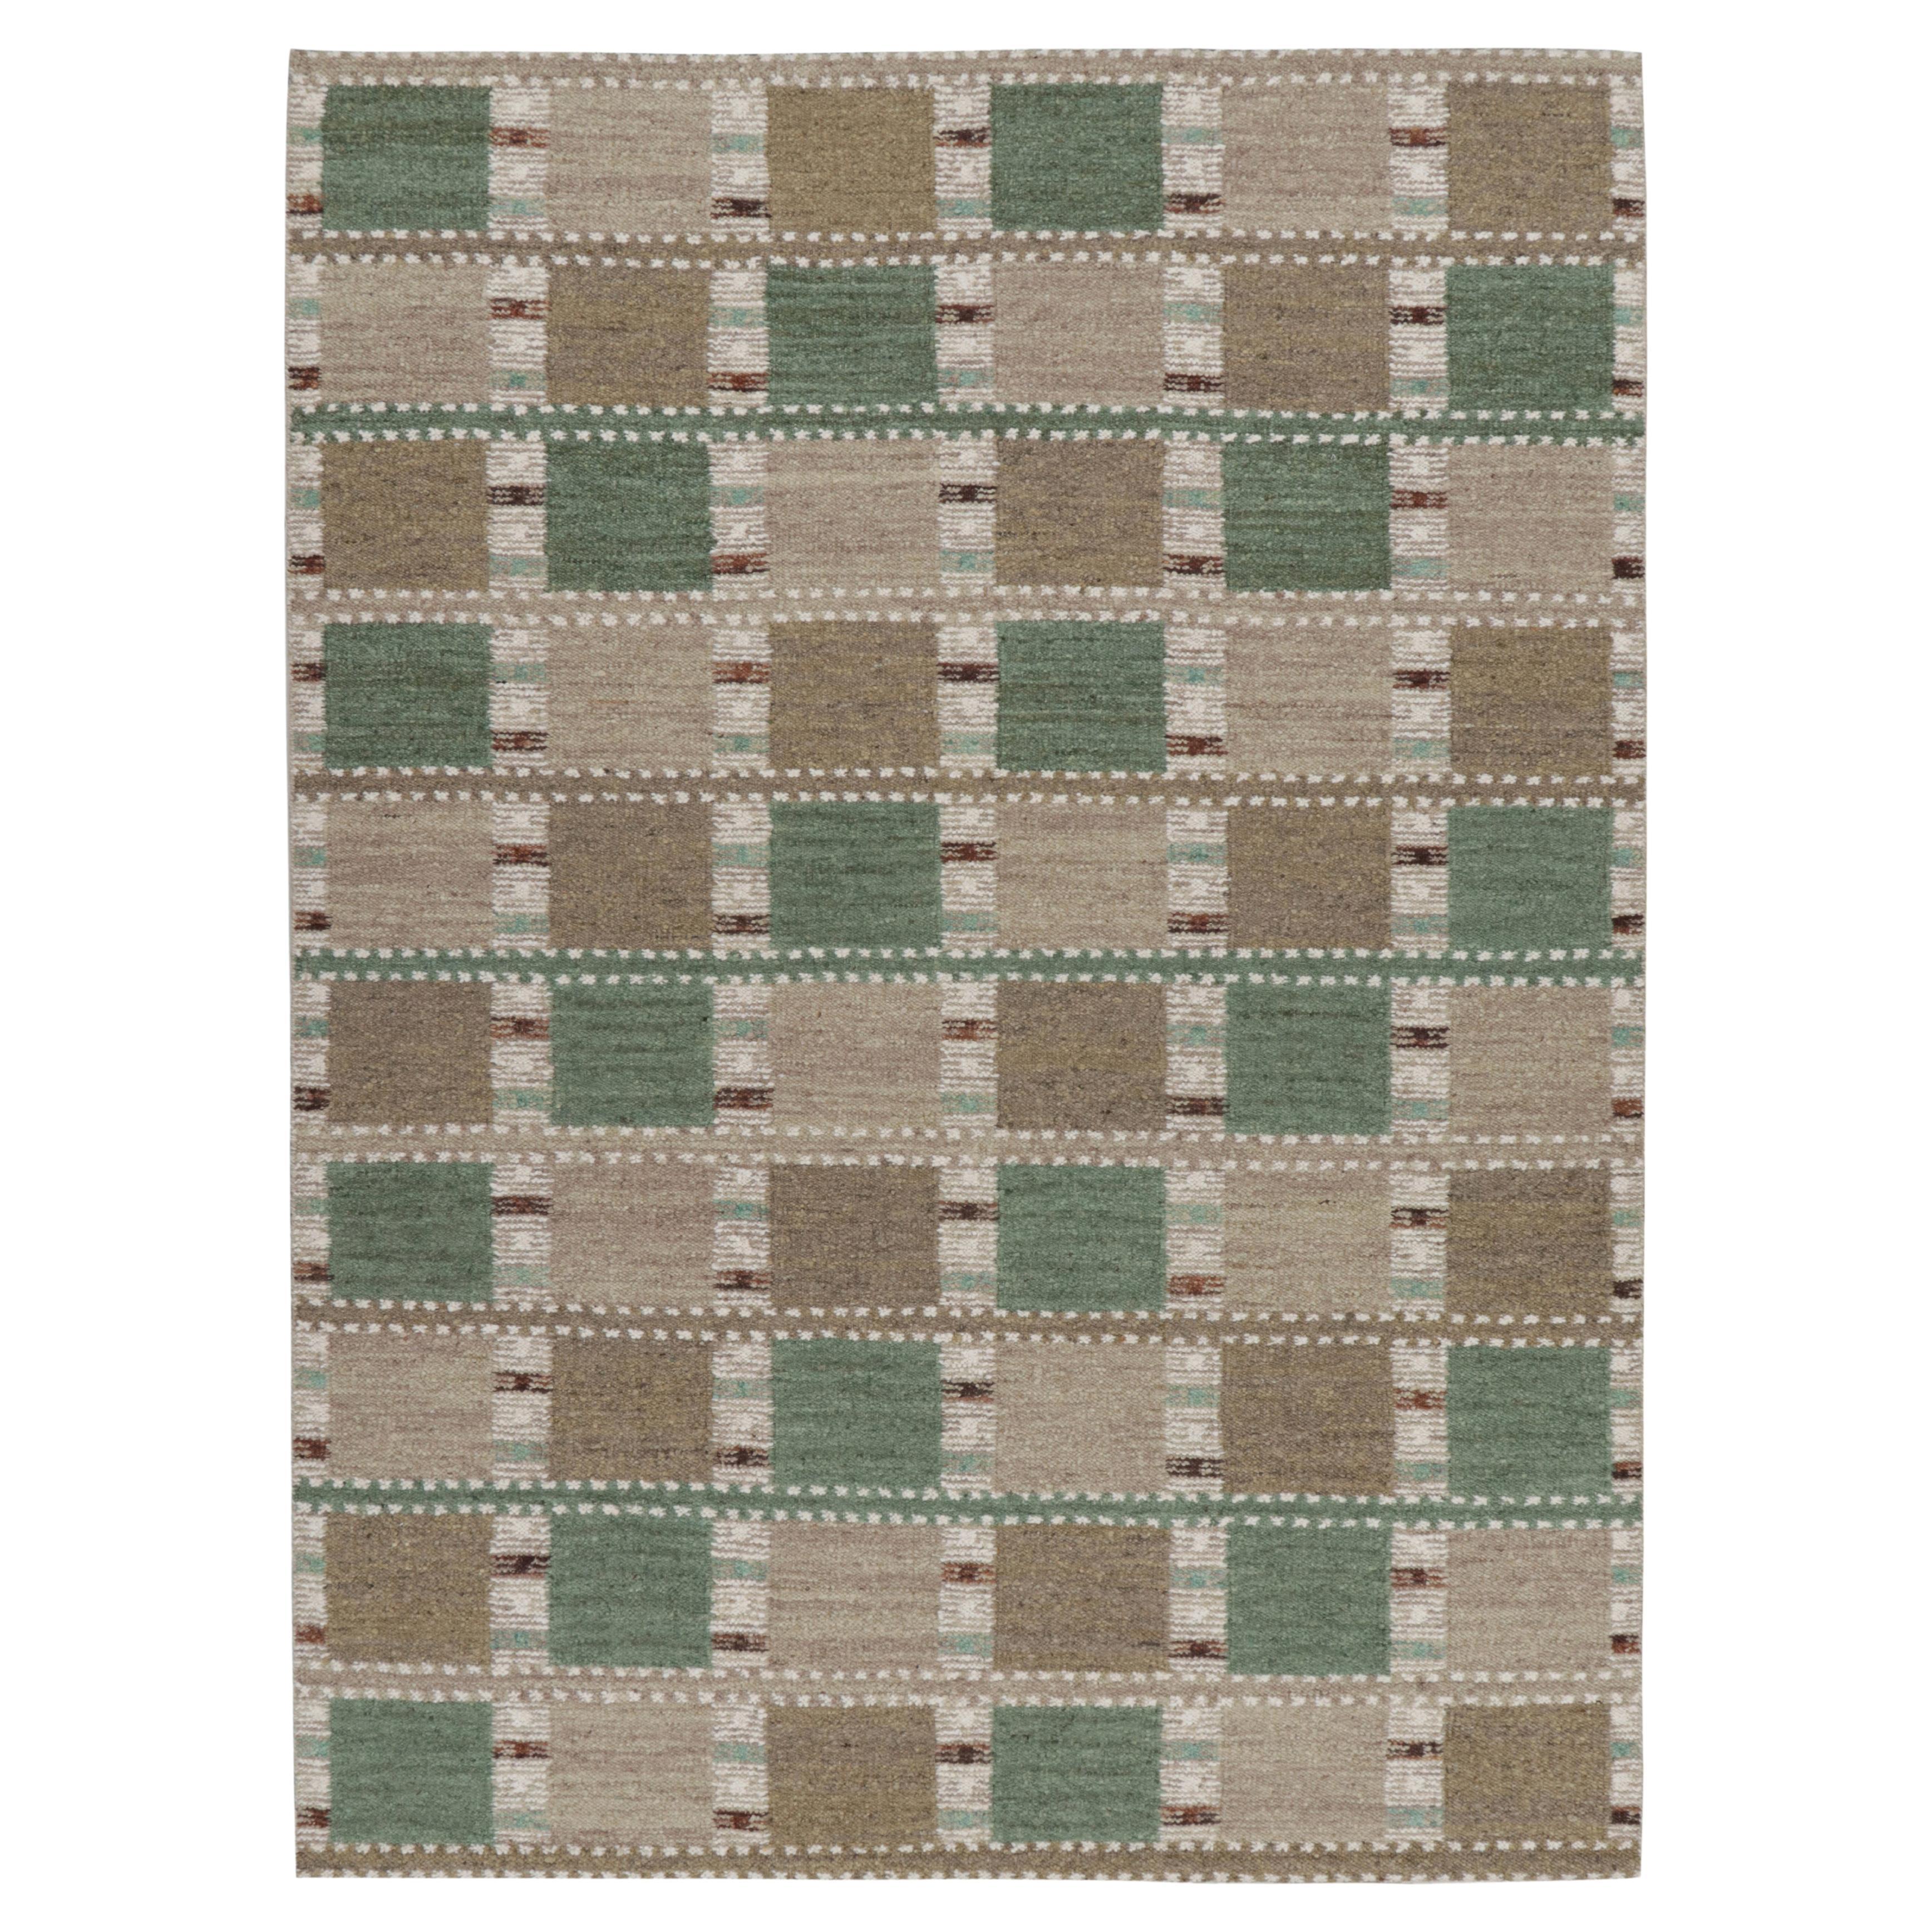 Rug & Kilim's Scandinavian Style Rug in Green and Beige-Brown with Patterns (tapis de style scandinave en vert et beige-marron avec motifs)